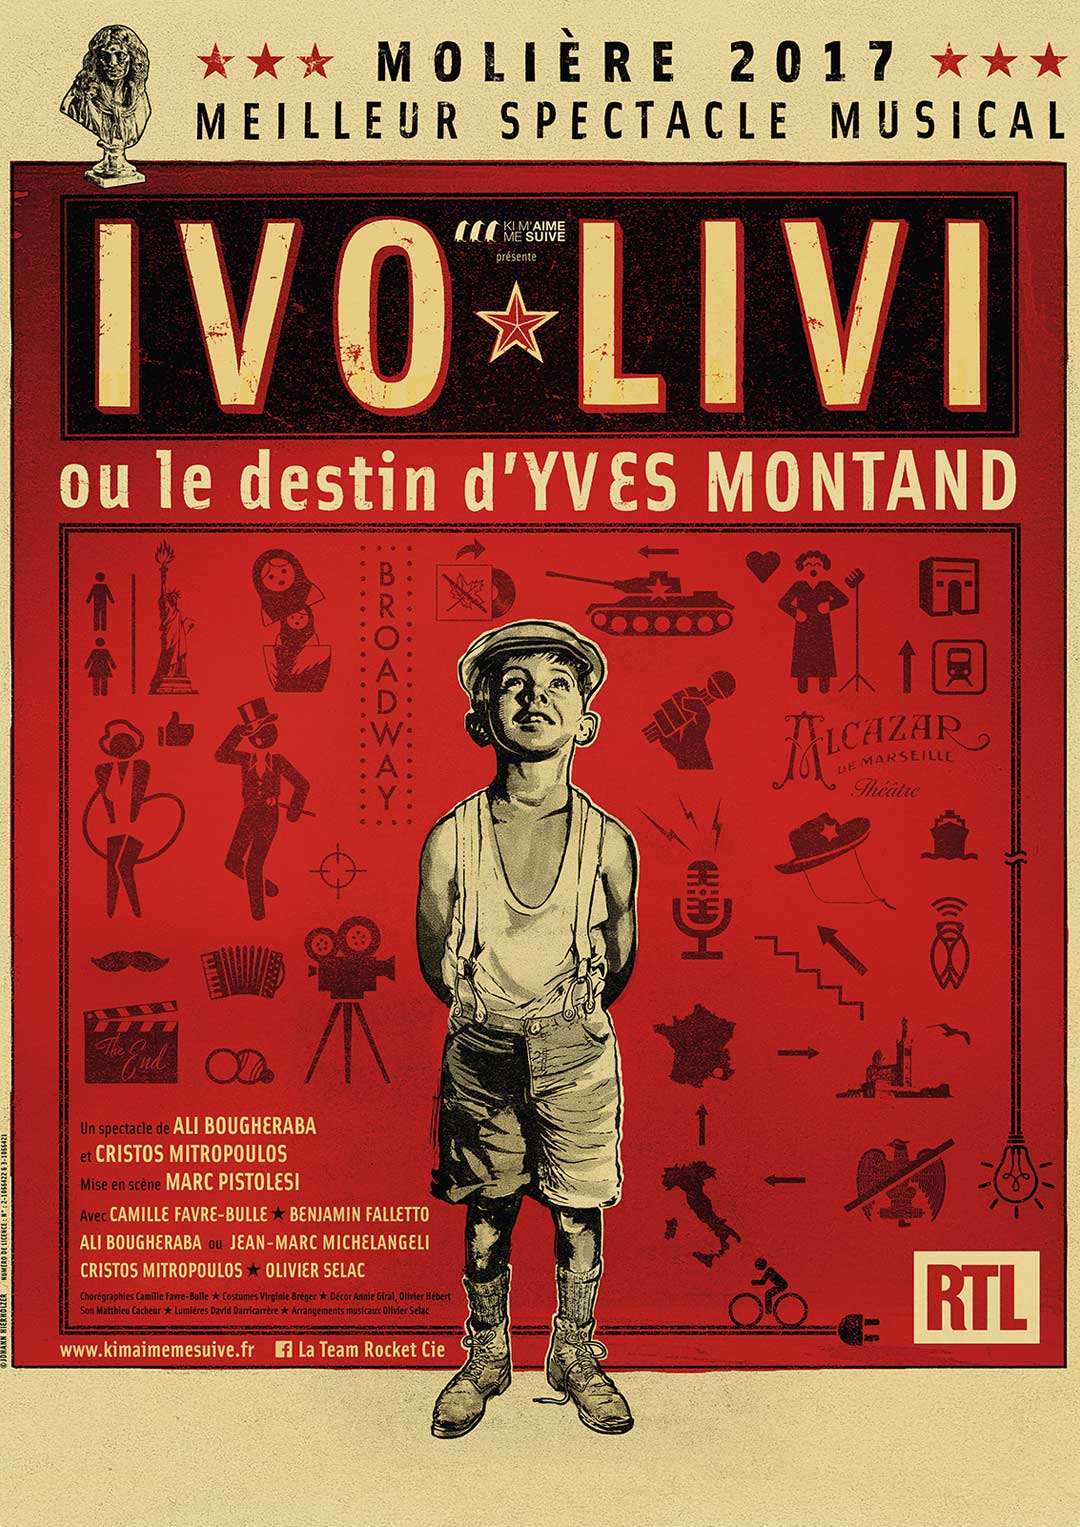 IVO LIVI OU LE DESTIN D'YVES MONTAND. Au théâtre de Tournon-sur-Rhône le mercredi 4 octobre 2017 à 20h30.